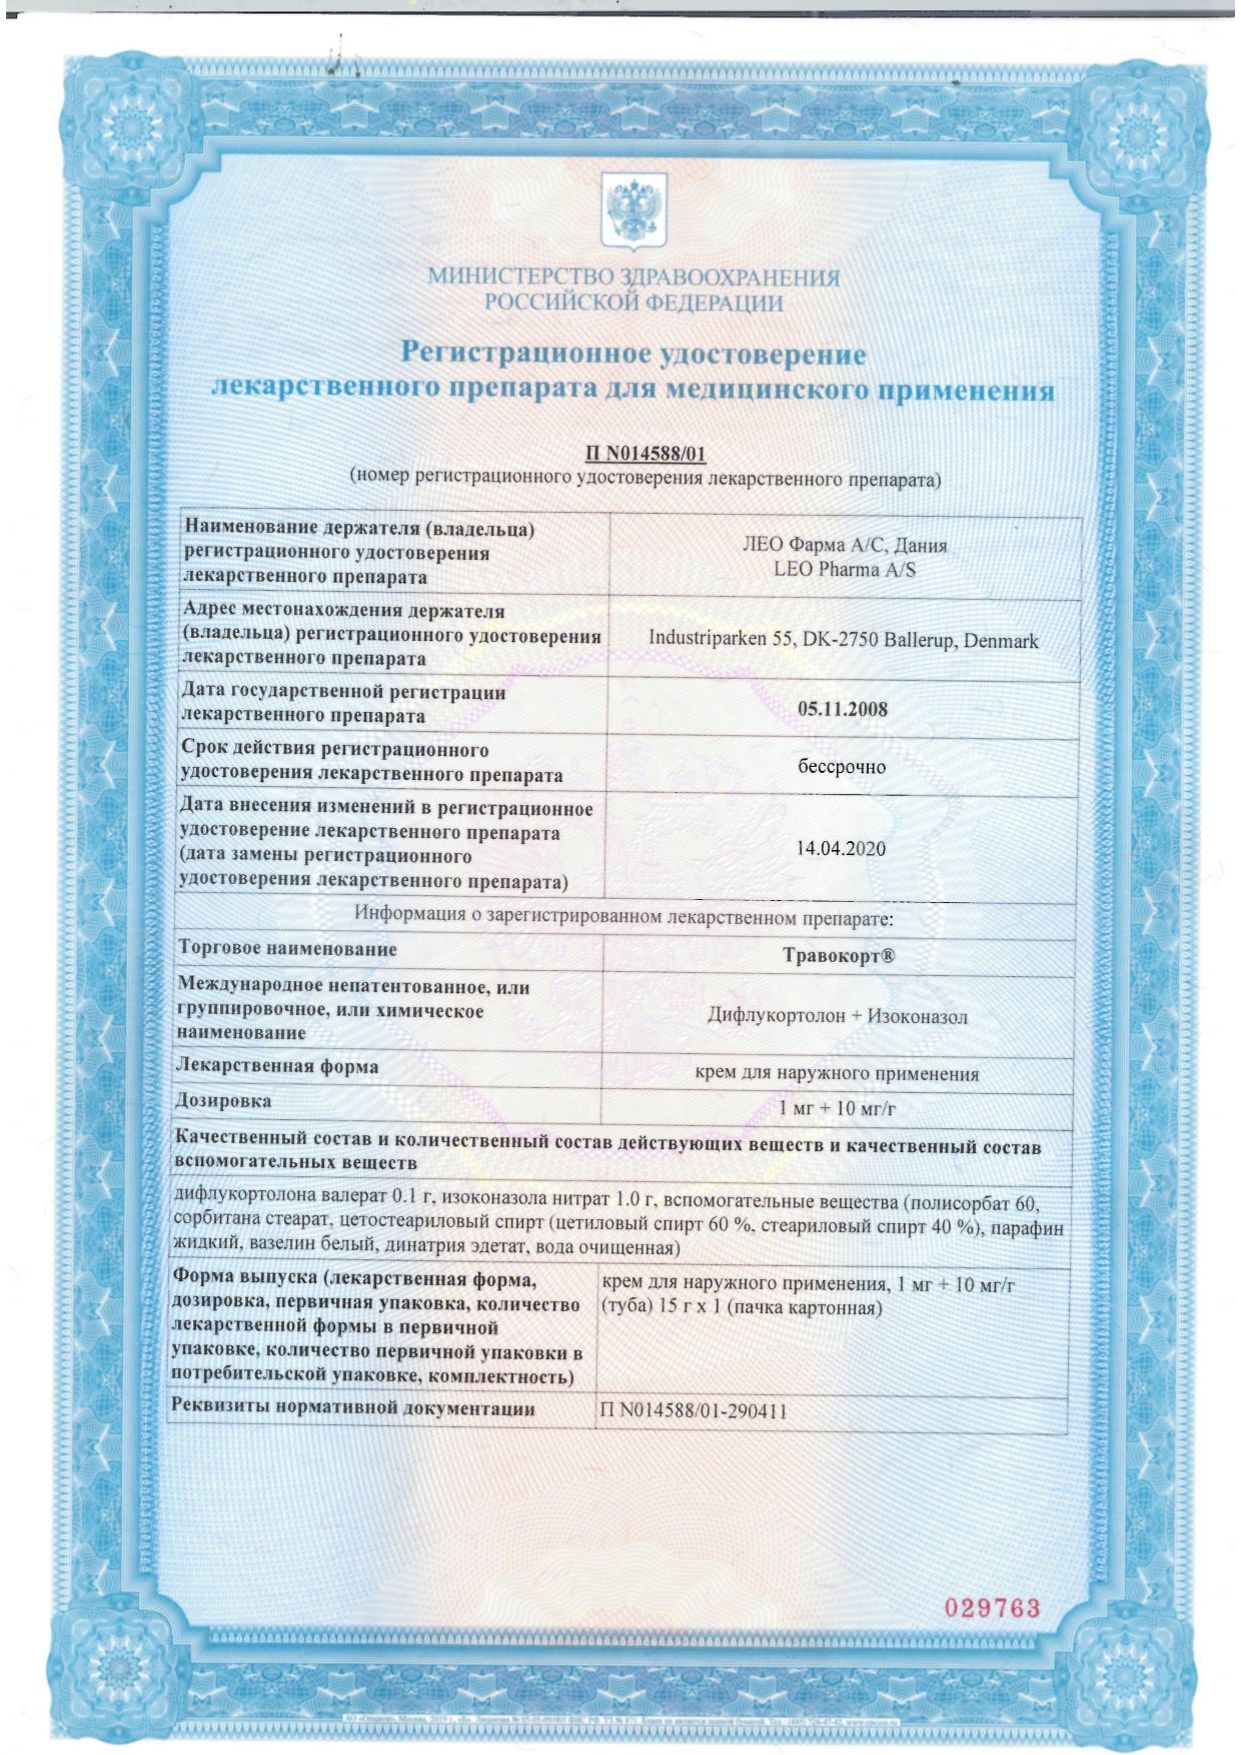 Травокорт сертификат